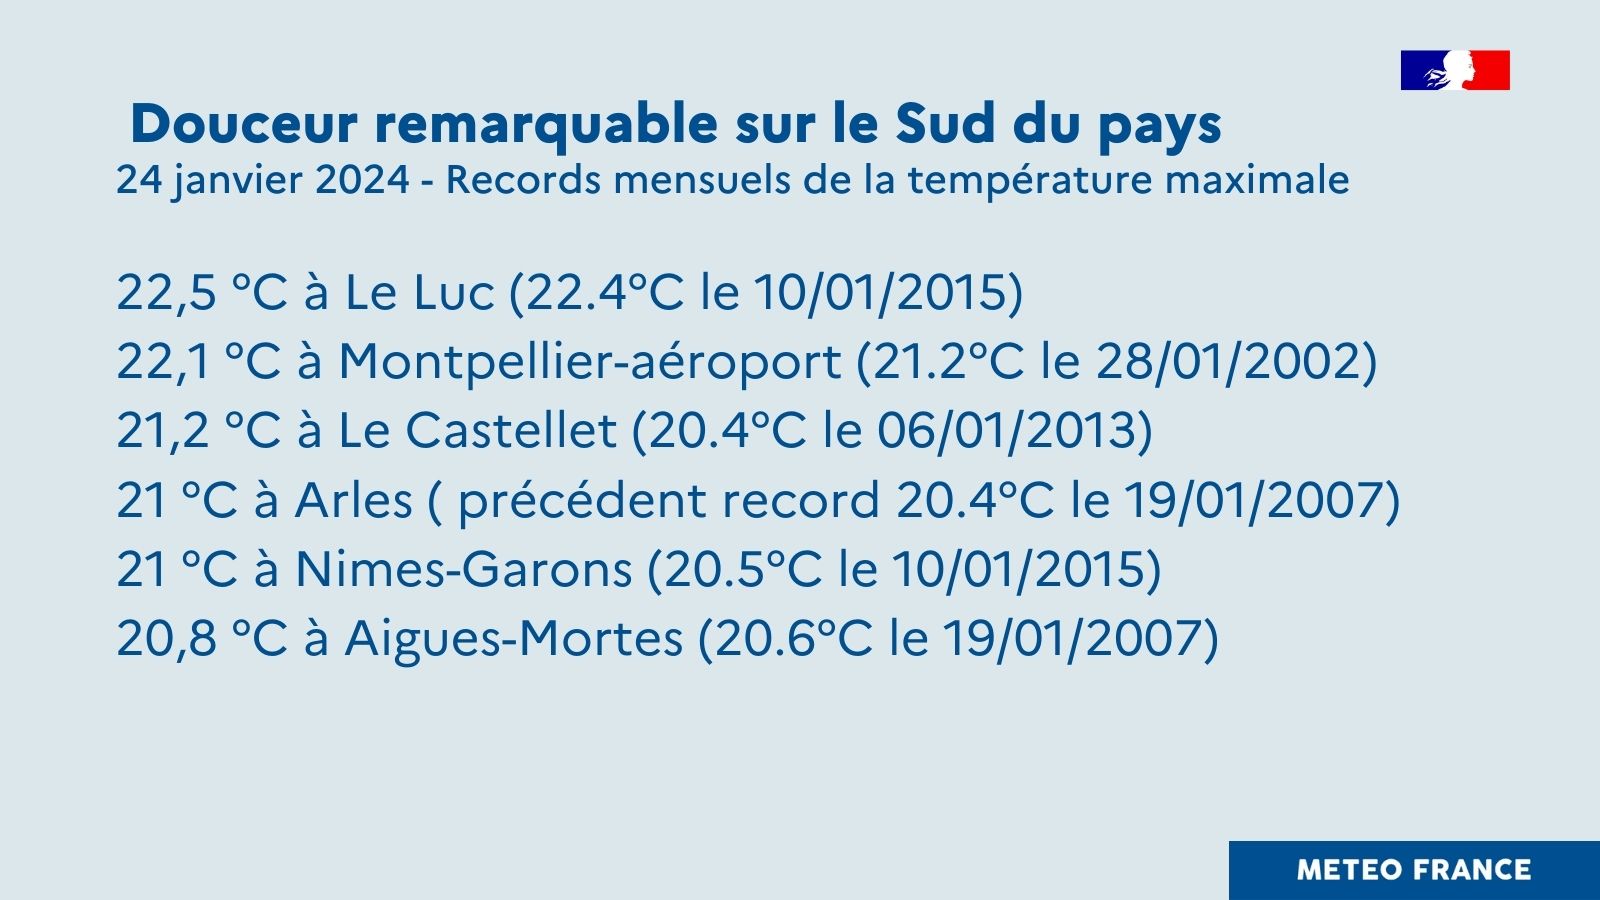 Records mensuels de température maximale le 24 janvier 2024 © Météo-France